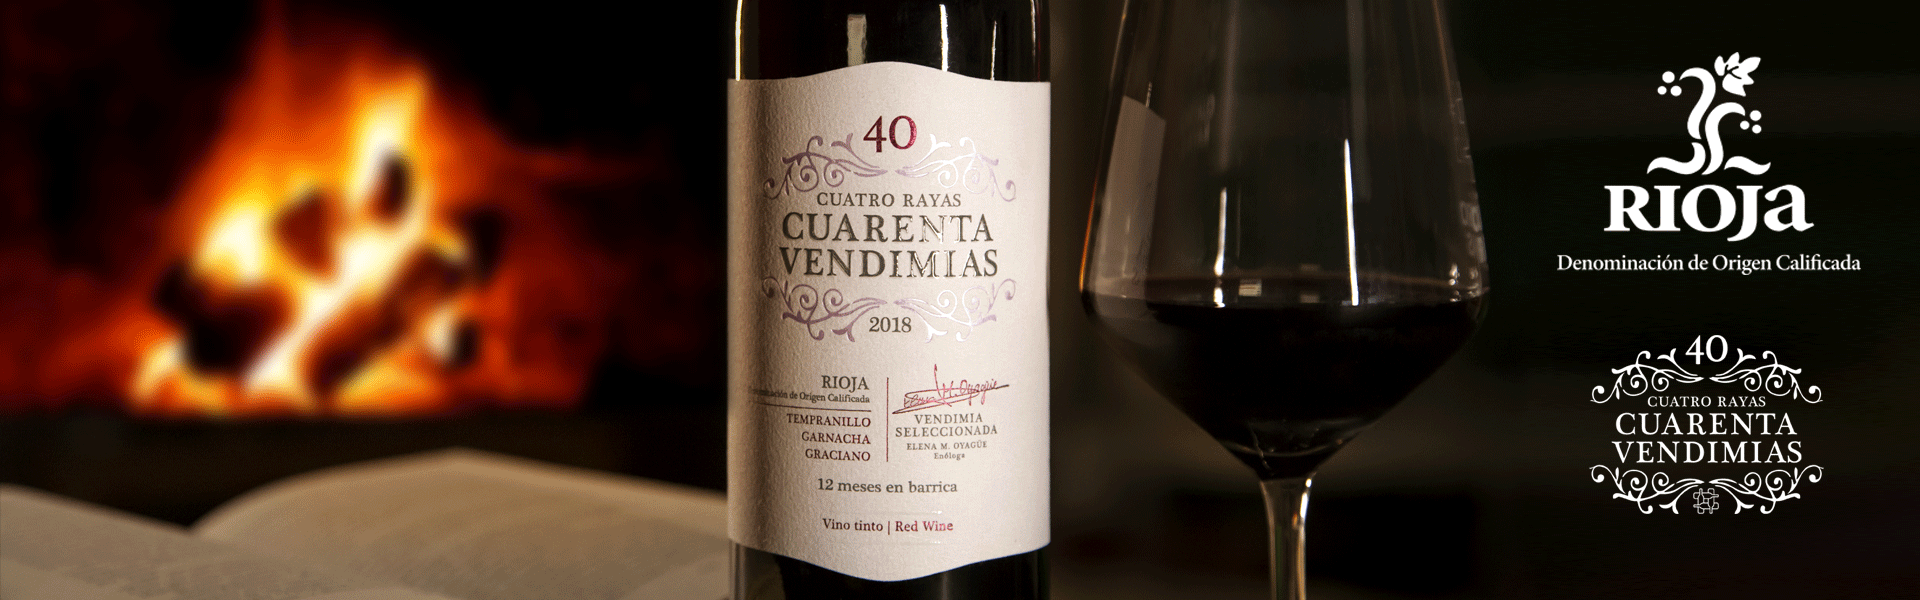 Cuarenta-Vendimias-Rioja_feb2021